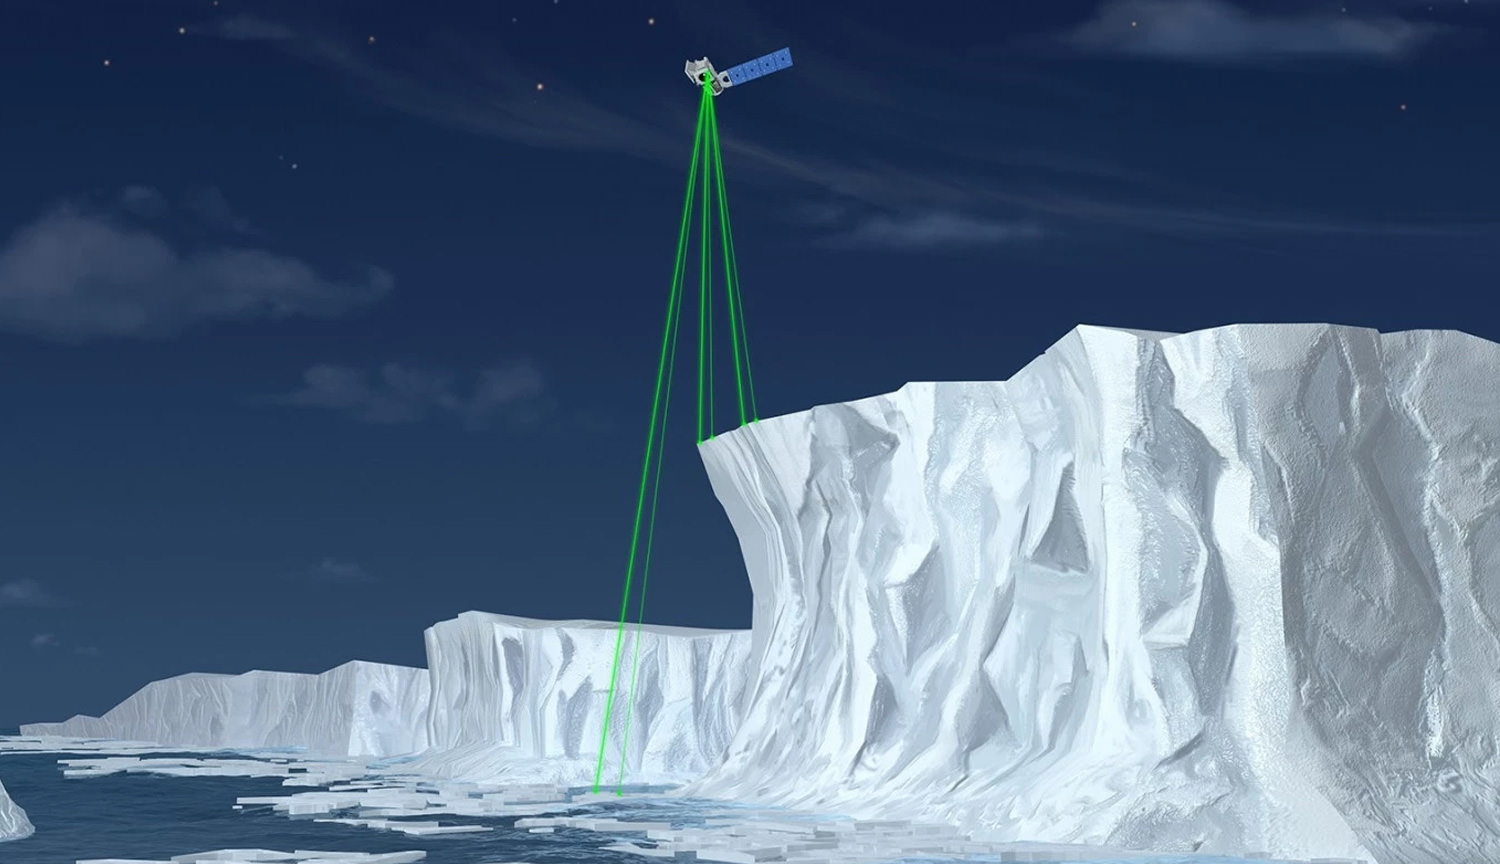 वेबकास्ट: नासा का शुभारंभ करेंगे एक उपग्रह ICESat-2 अध्ययन करने के लिए बर्फ कवर पृथ्वी के